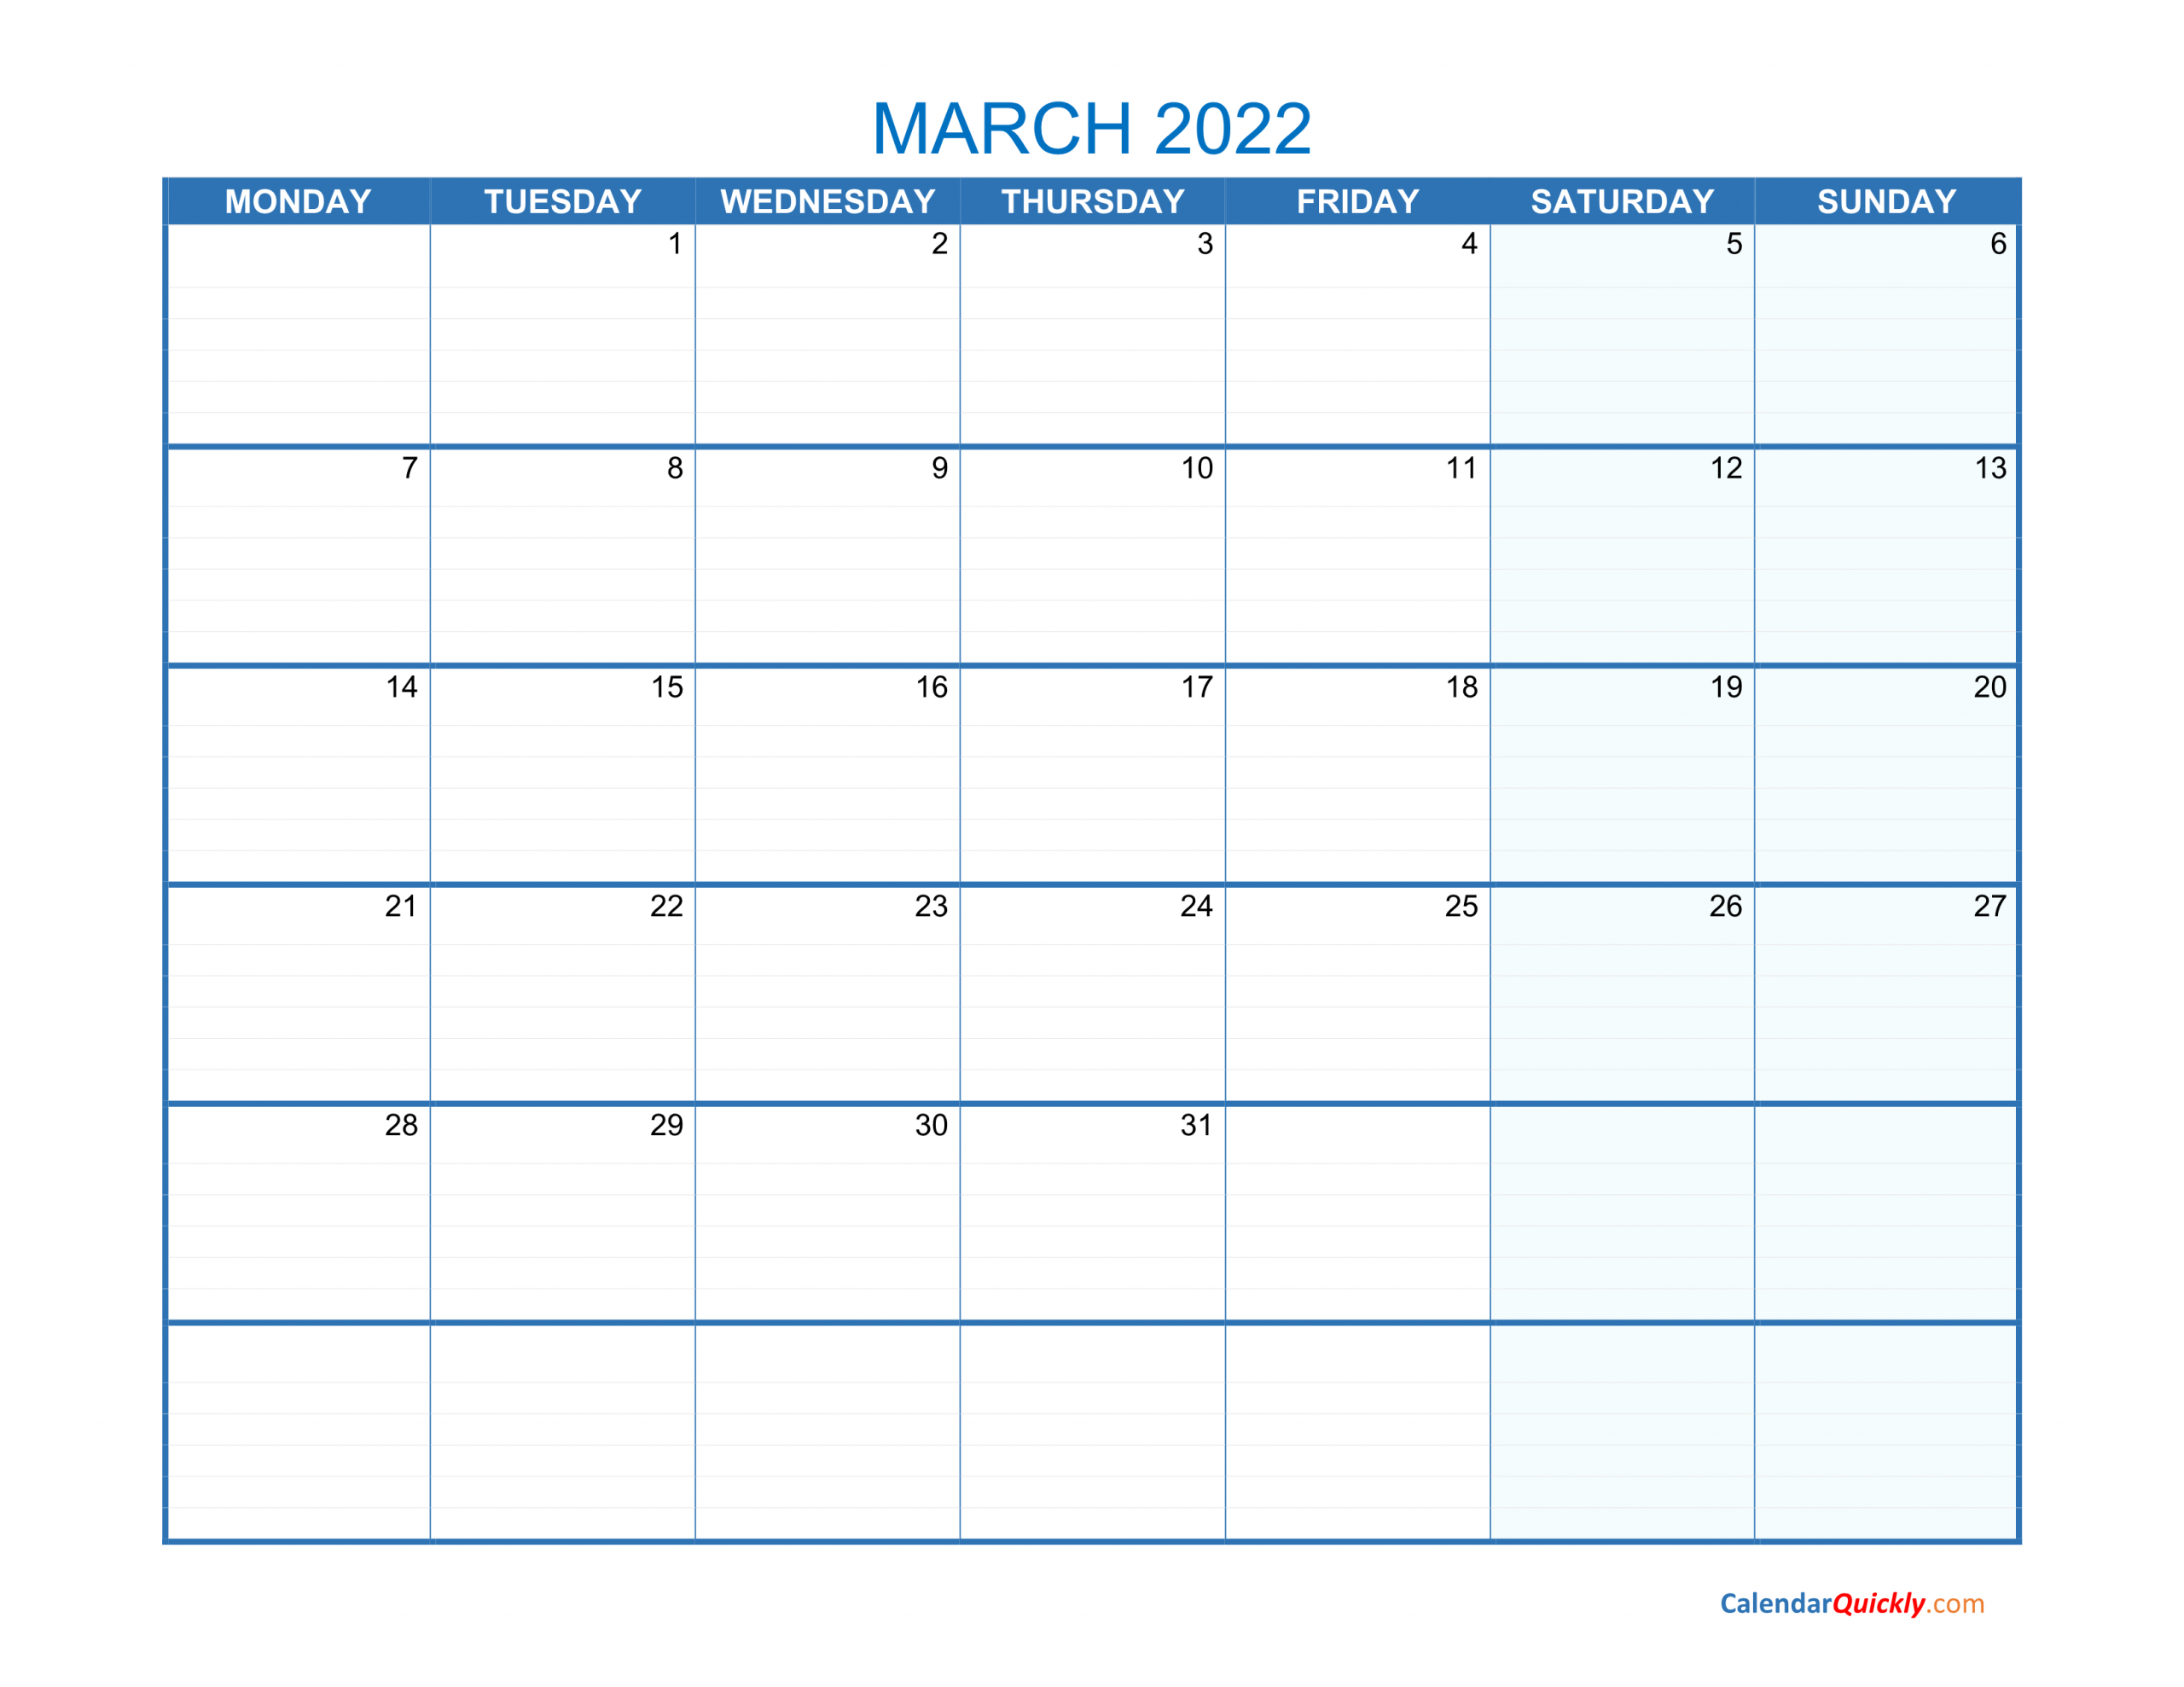 March Monday 2022 Blank Calendar Calendar Quickly 1